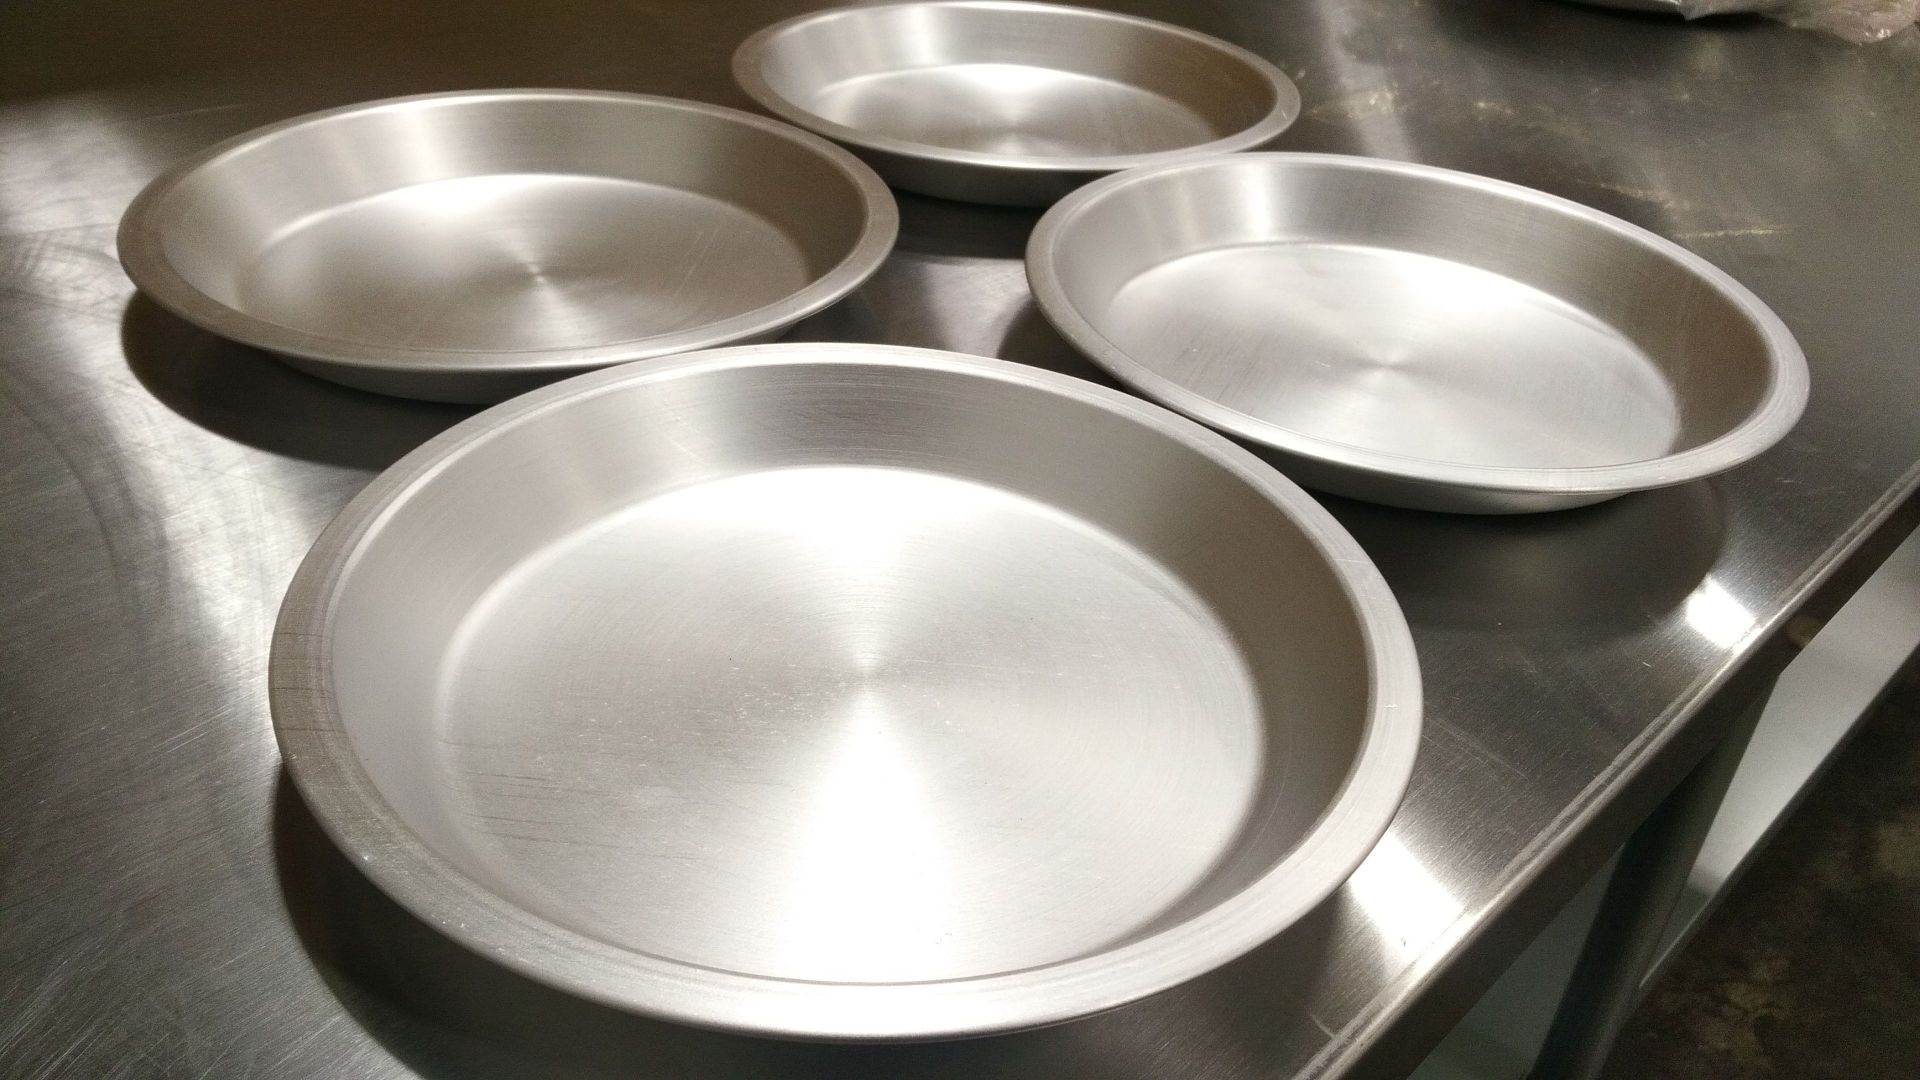 8" x 1" Aluminum Pie Plates - Lot of 4 - Image 2 of 3